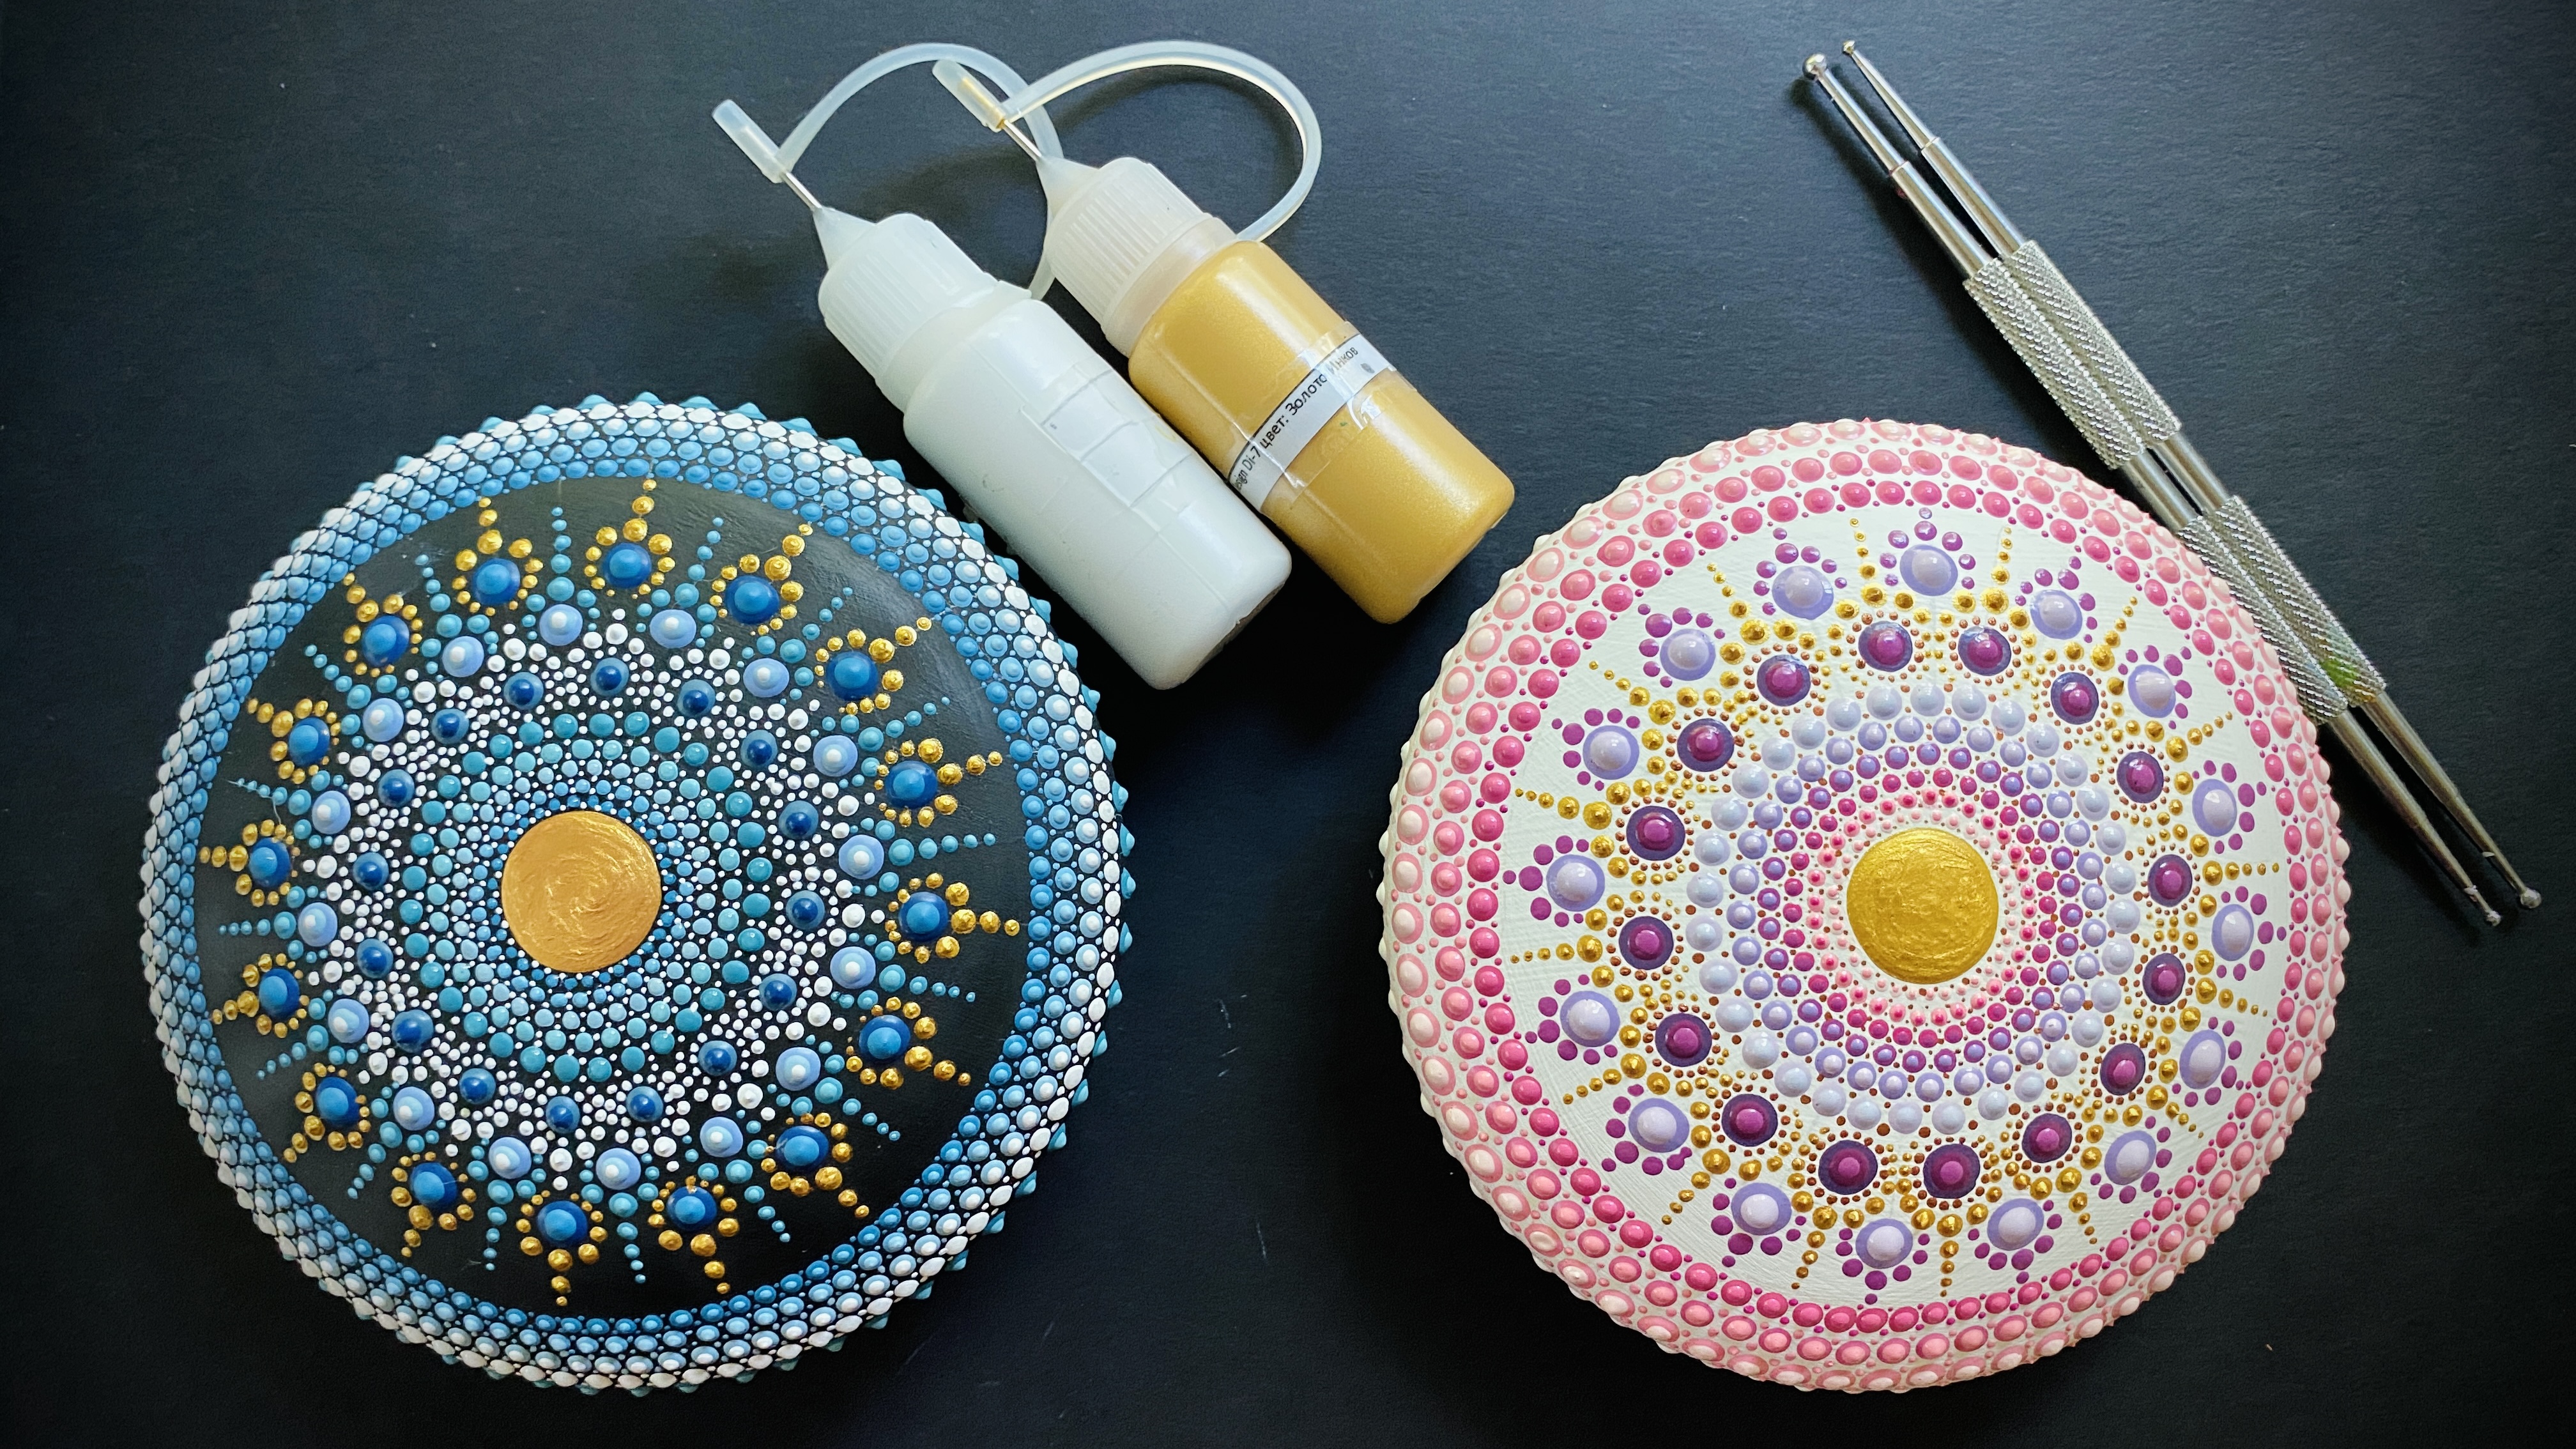 DIY Mandala Dotting Art Craft Kit, DIY Craft Kit, Gifts